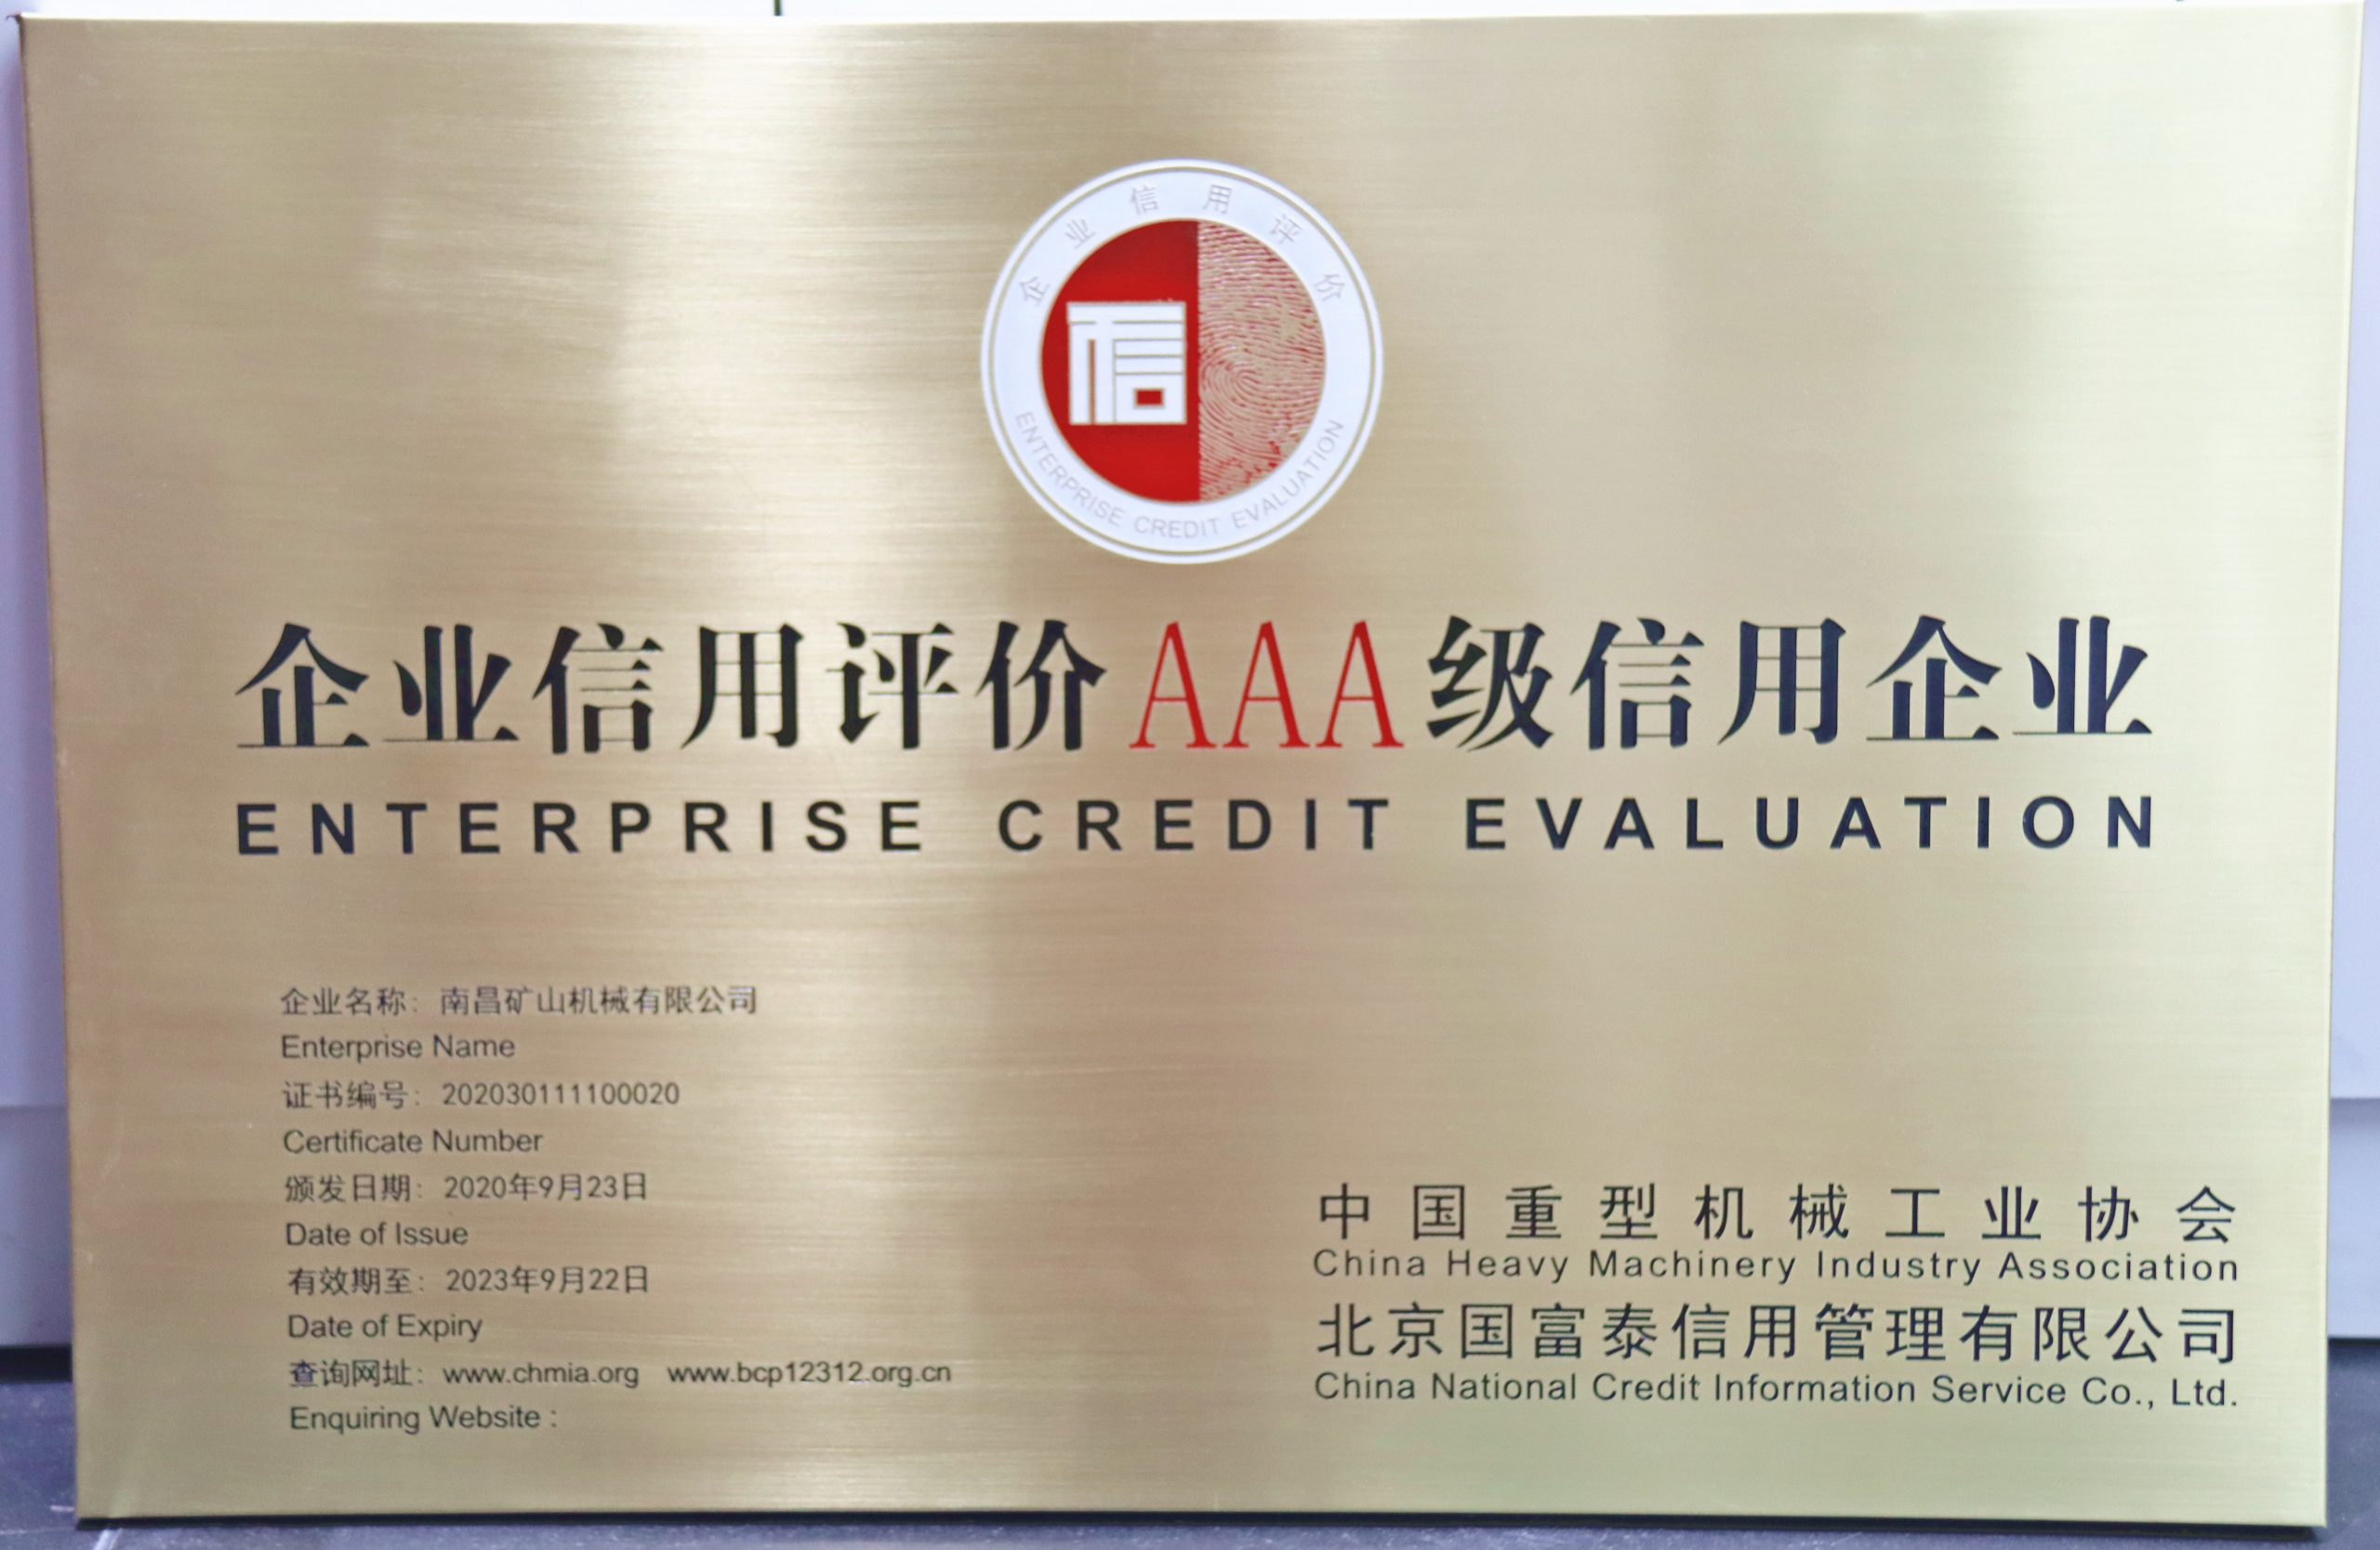 中国重机协会企业信用评价AAA级信用企业